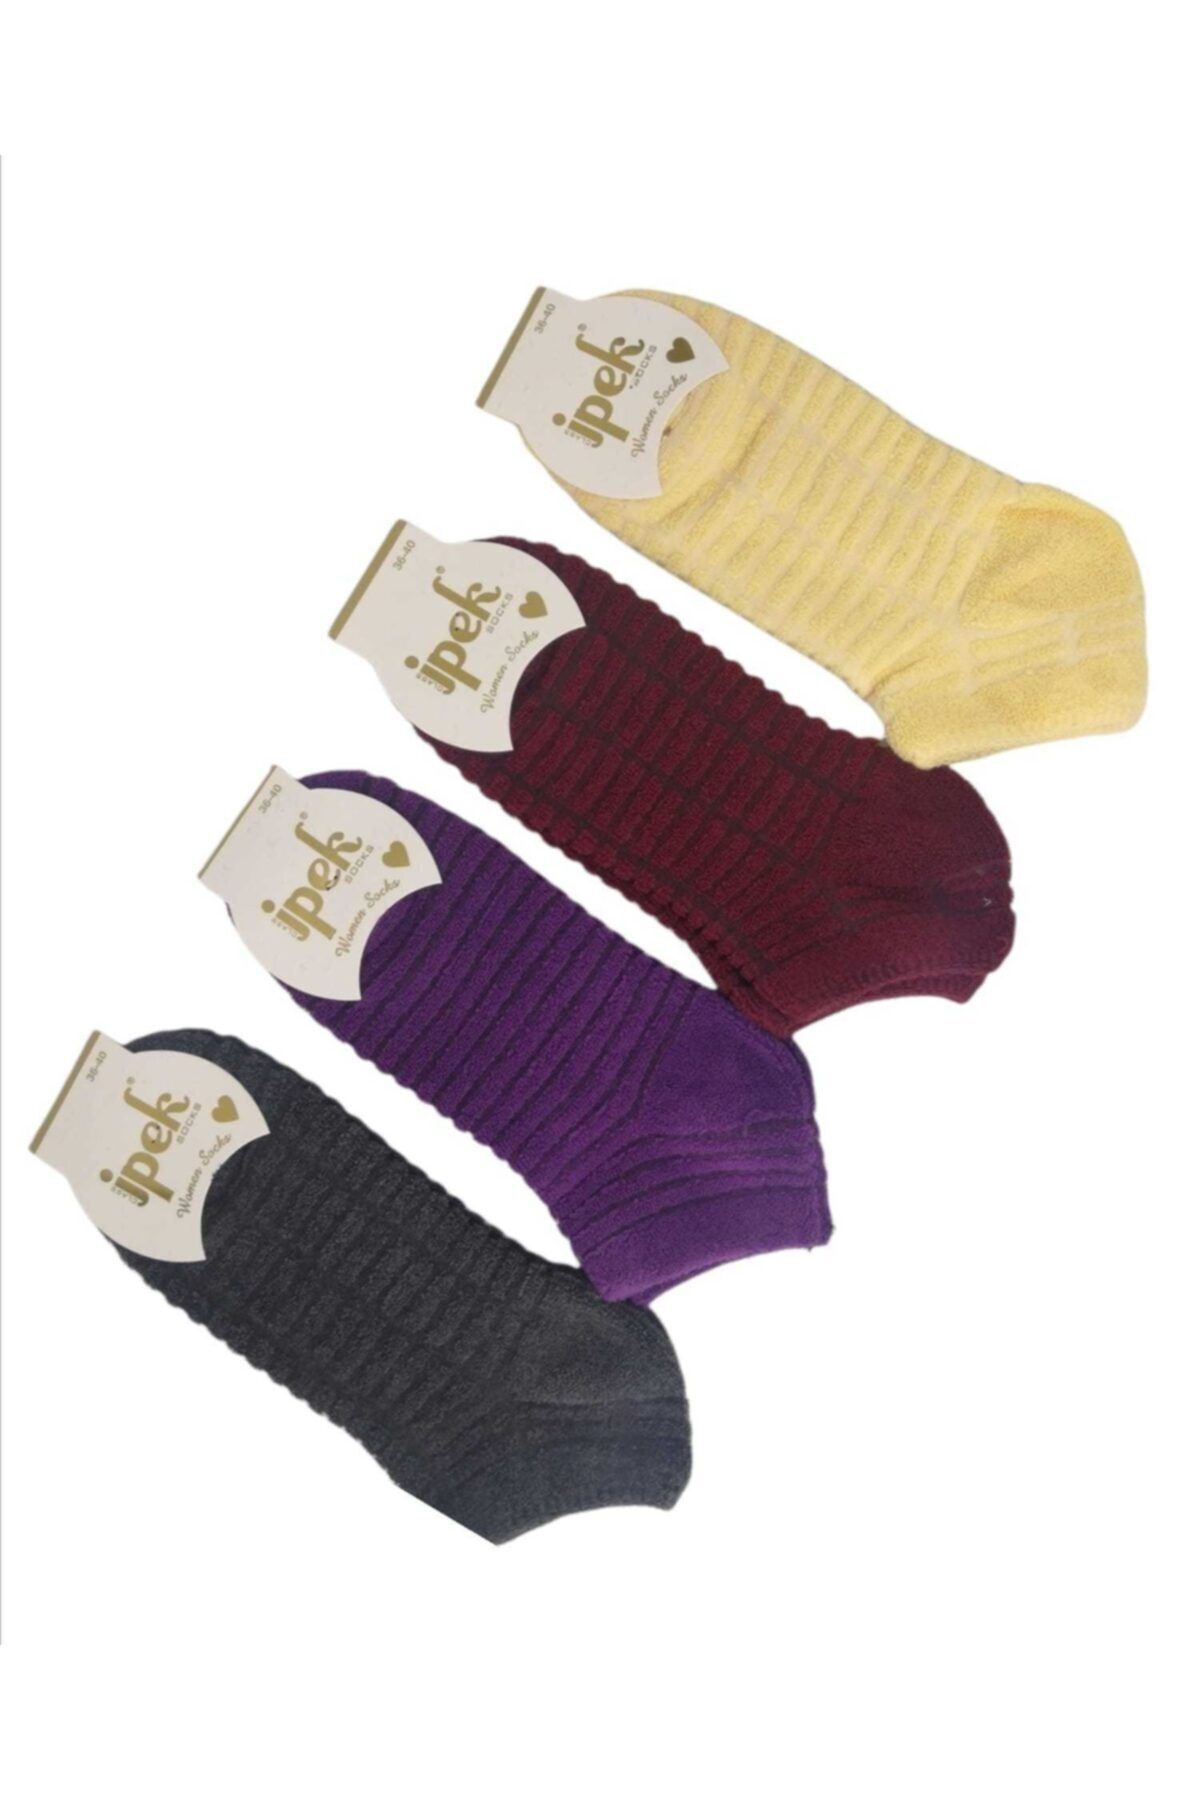 İpek Kadın Taban Altı Havlu Patik Çorap 12 Çift Renkli